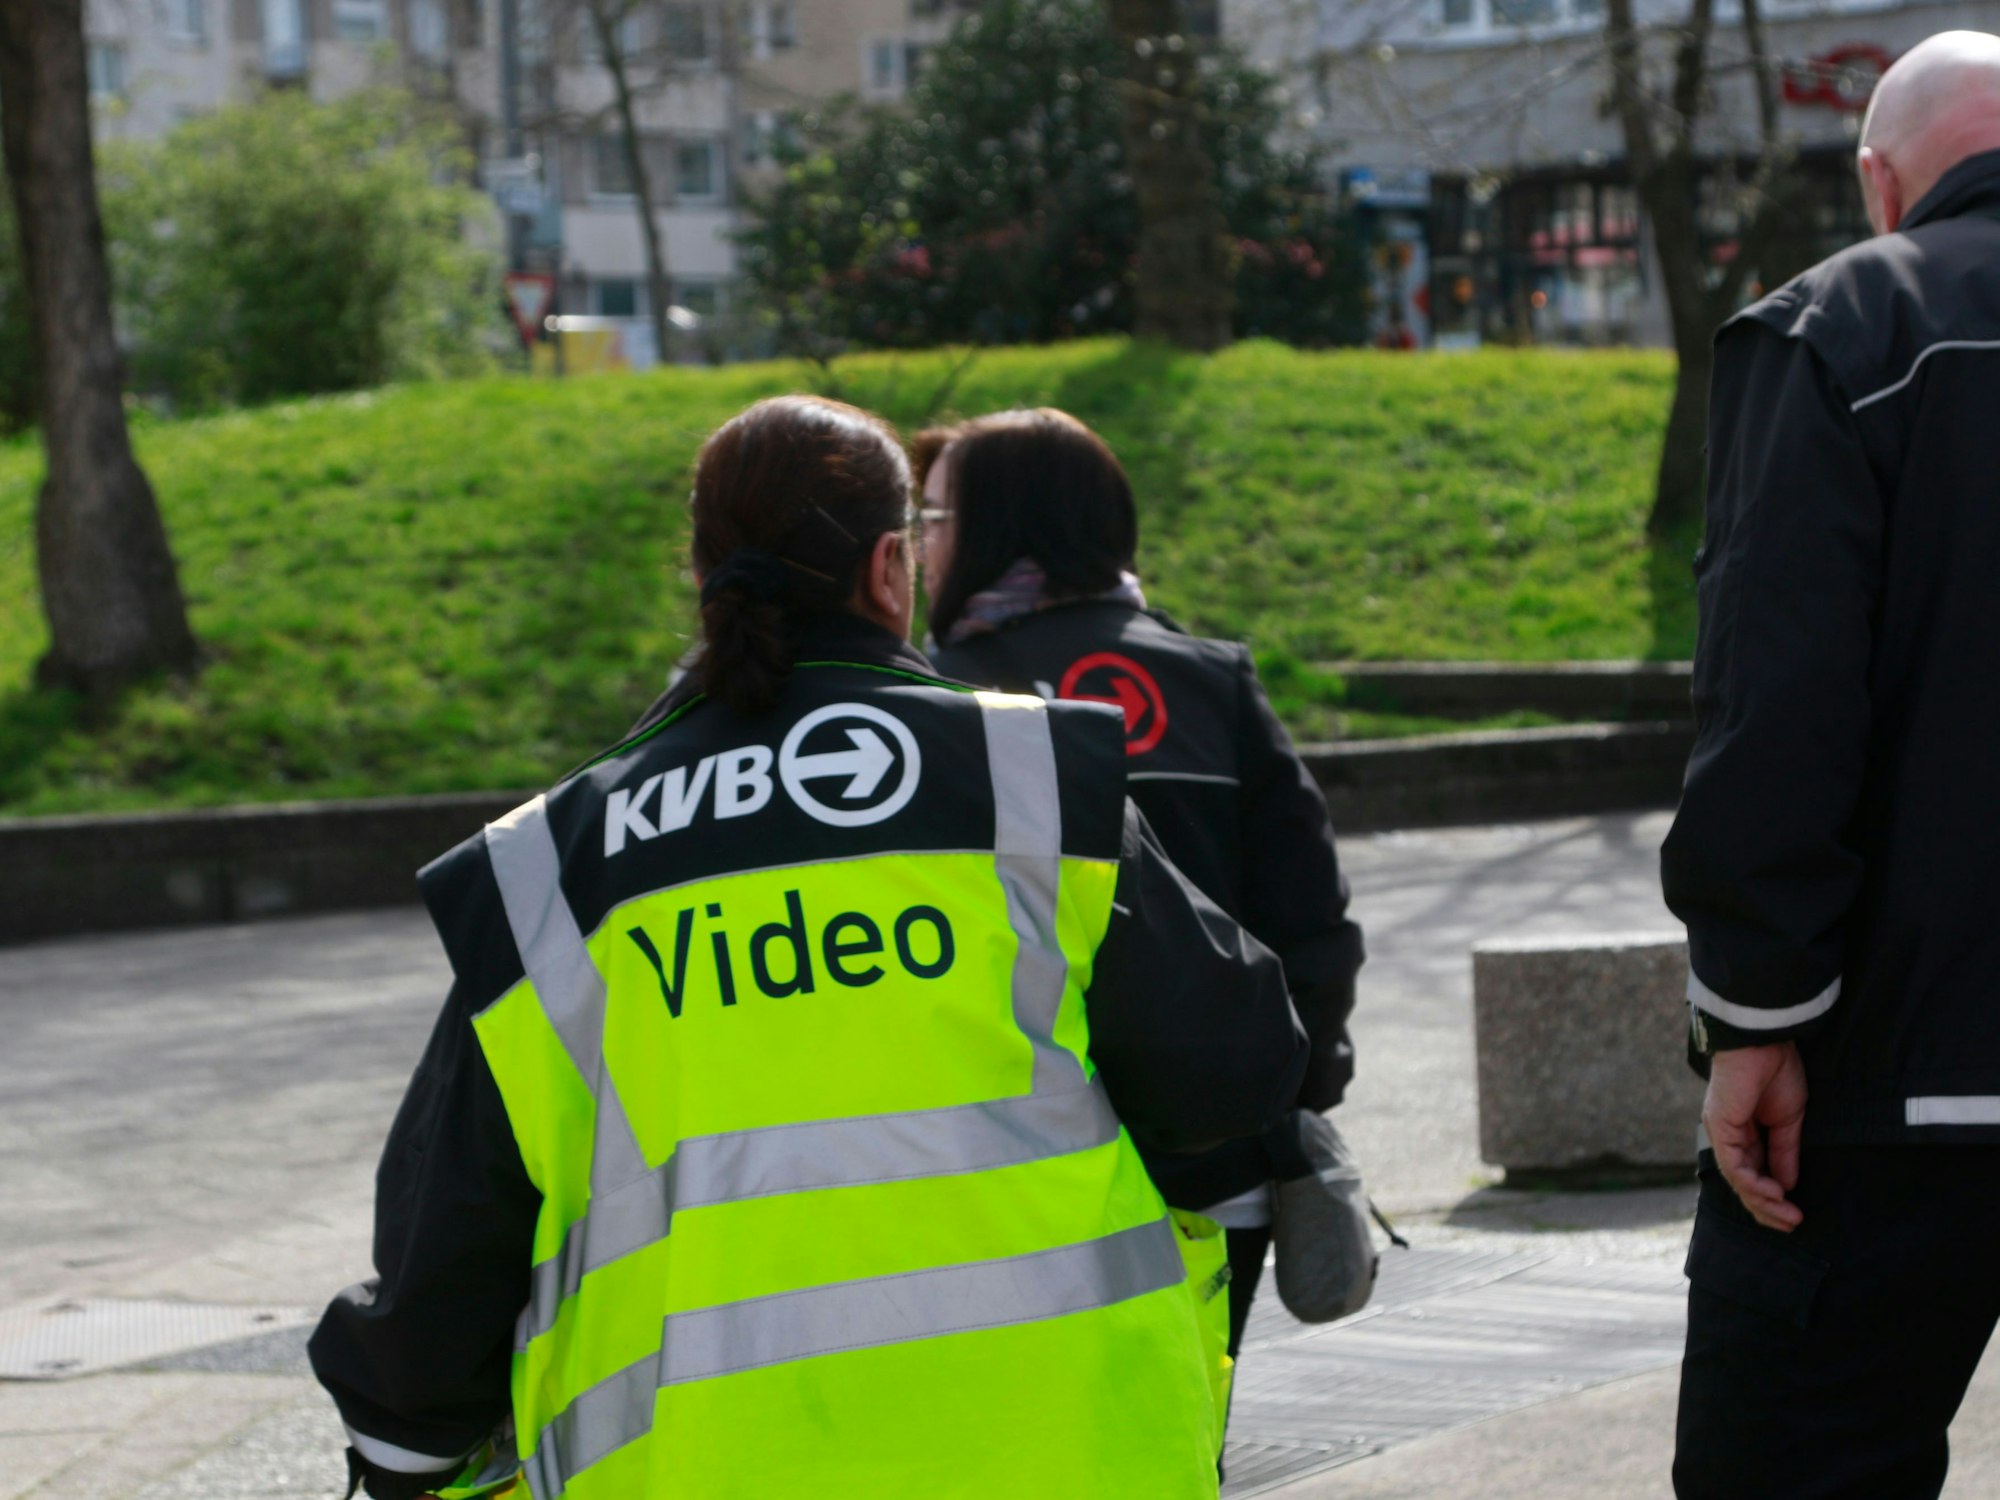 Drei Personen gehen über einen Platz, eine Frau trägt eine Weste mit der Aufschrift „KVB Video“.